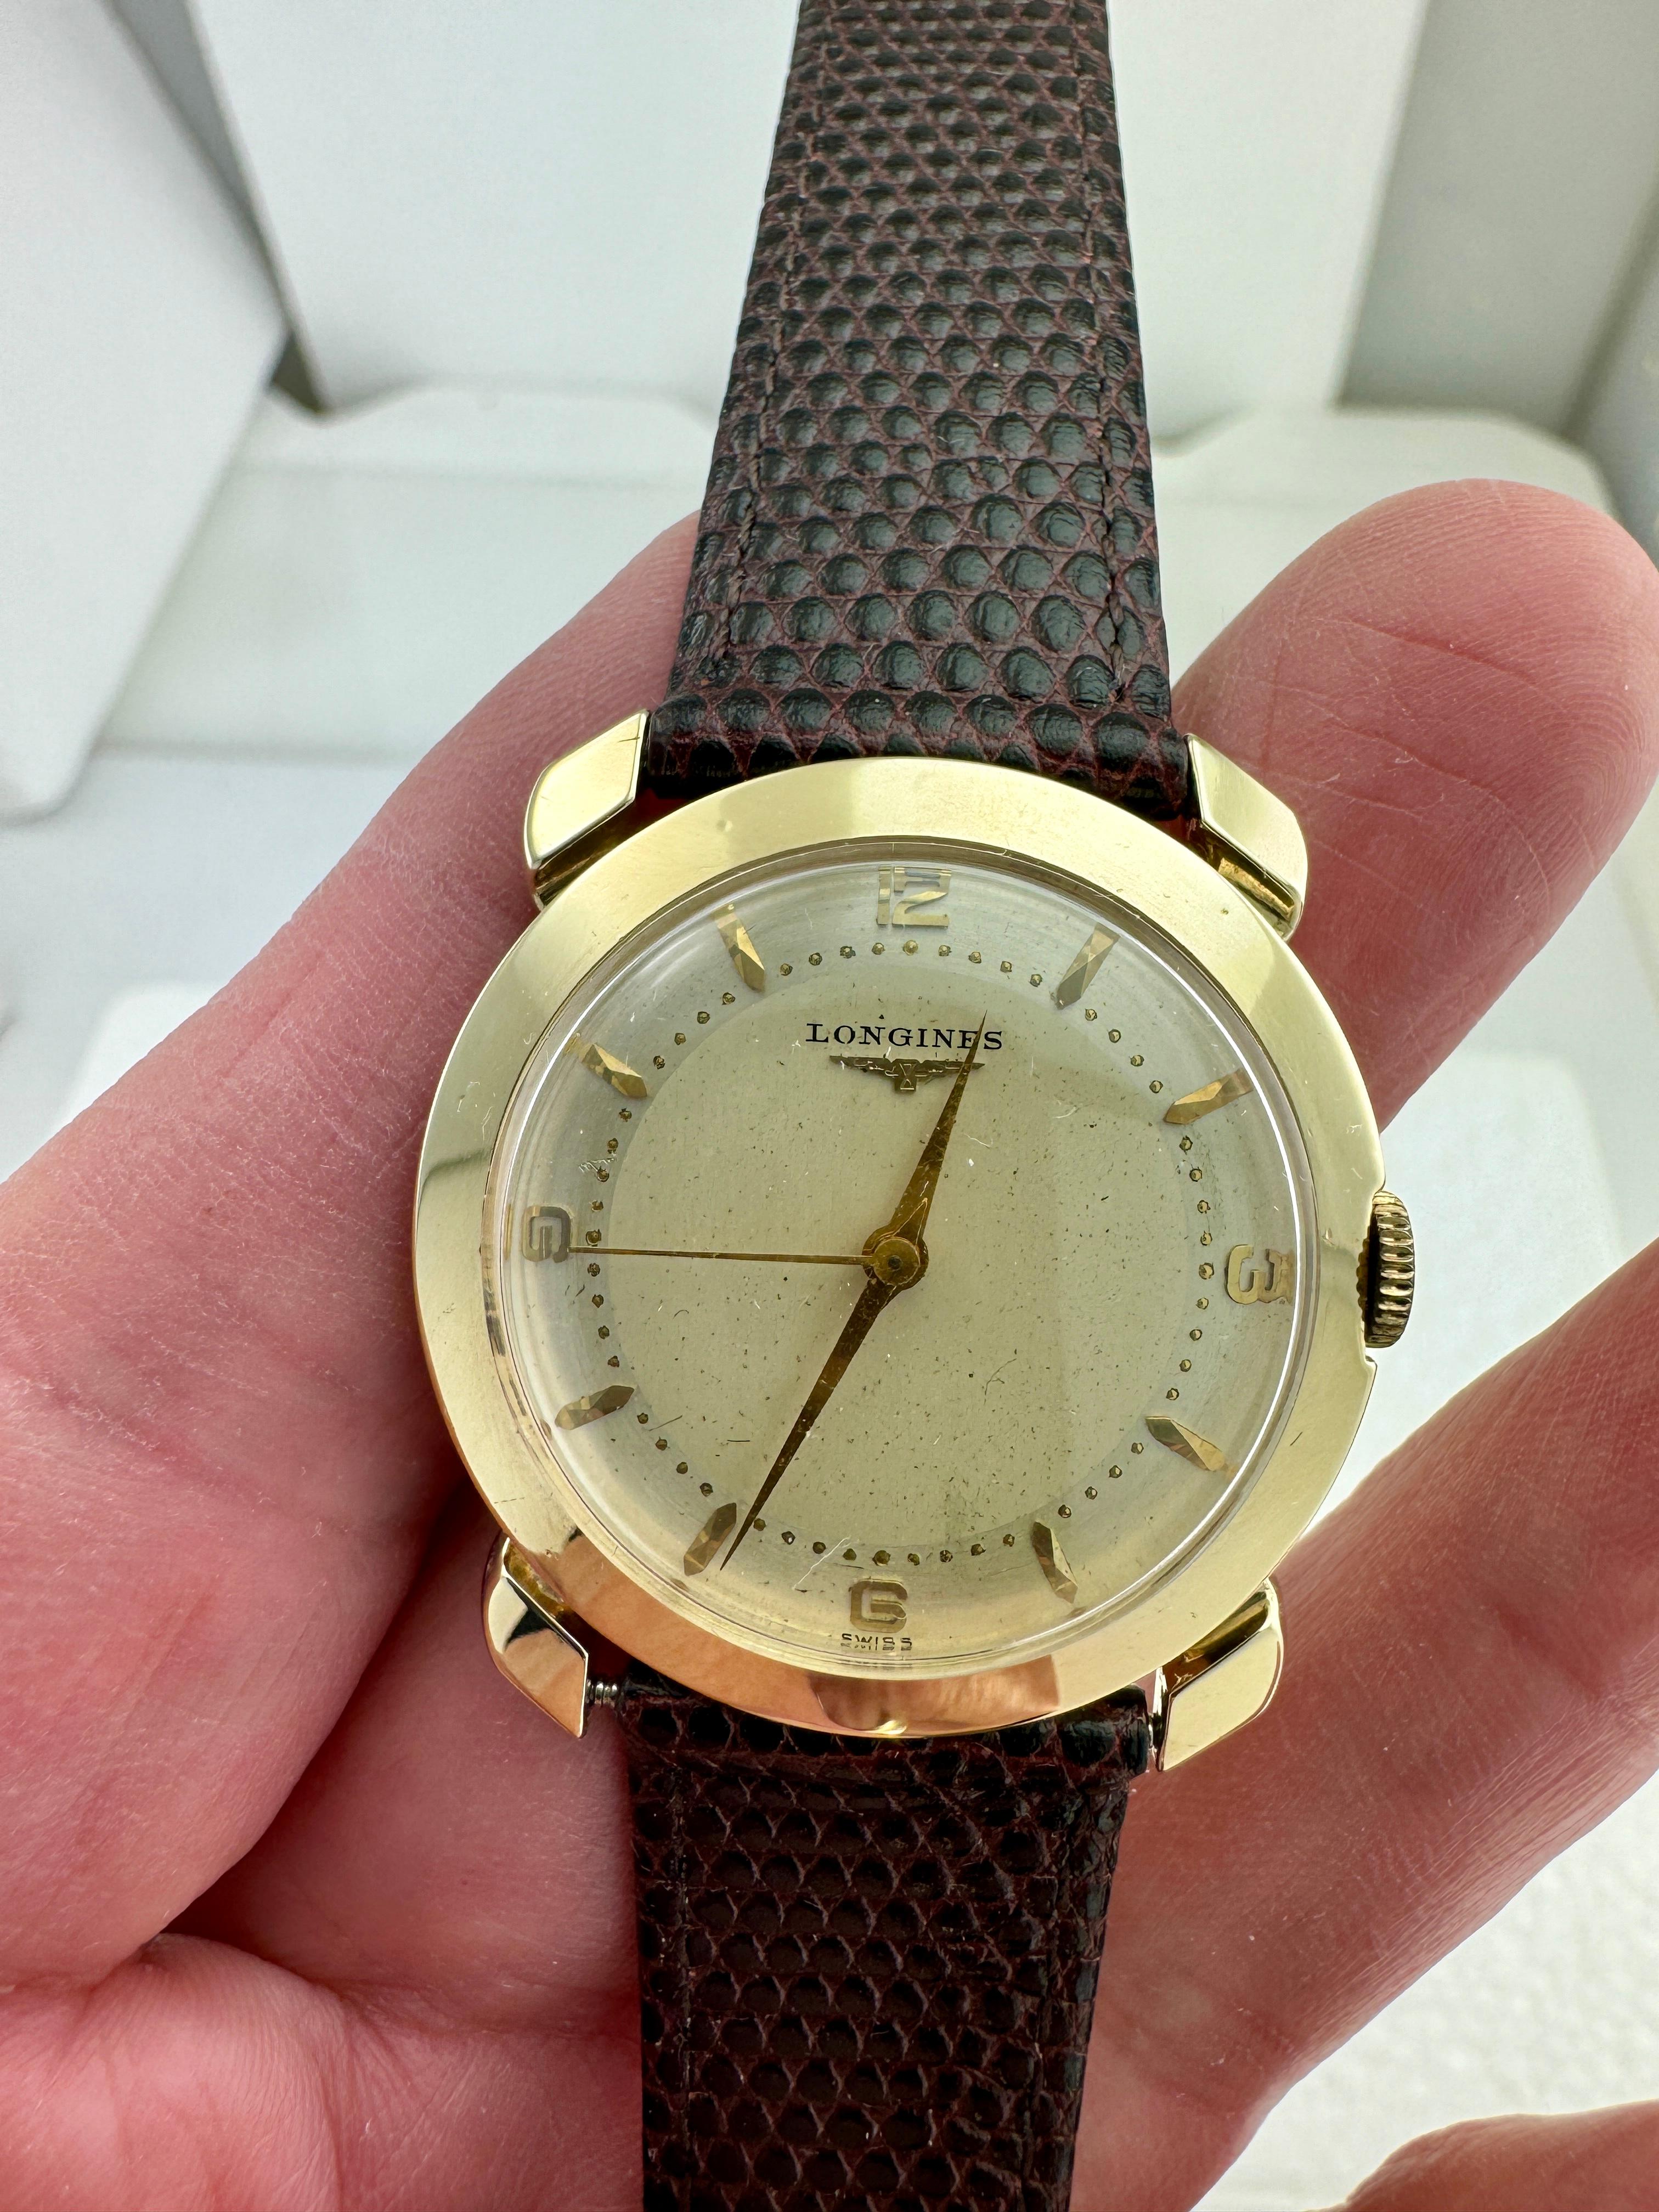 Vintage Longines Gelbgold-Armbanduhr, ca. 1950er Jahre.

Diese Longines Armbanduhr aus den 1950er Jahren hat ein 17 Jewels Kaliber 22LS Handaufzugswerk in seinem originalen 14k Gelbgoldgehäuse.  Das originale Zifferblatt weist eine gewisse Patina